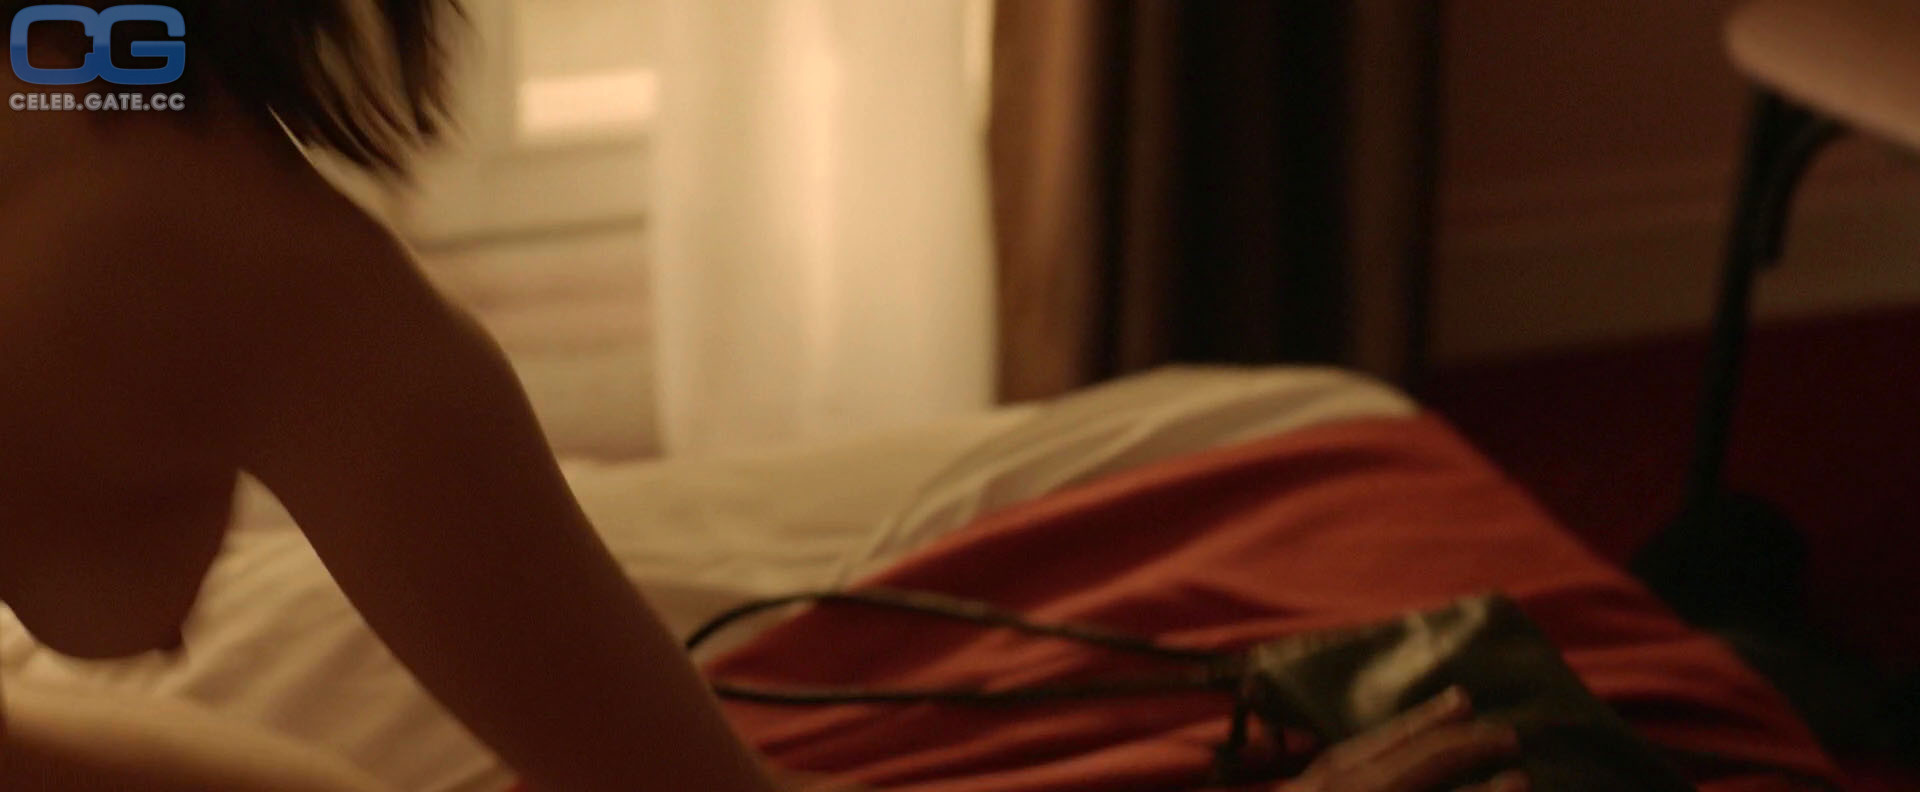 Gemma Arterton nude scene